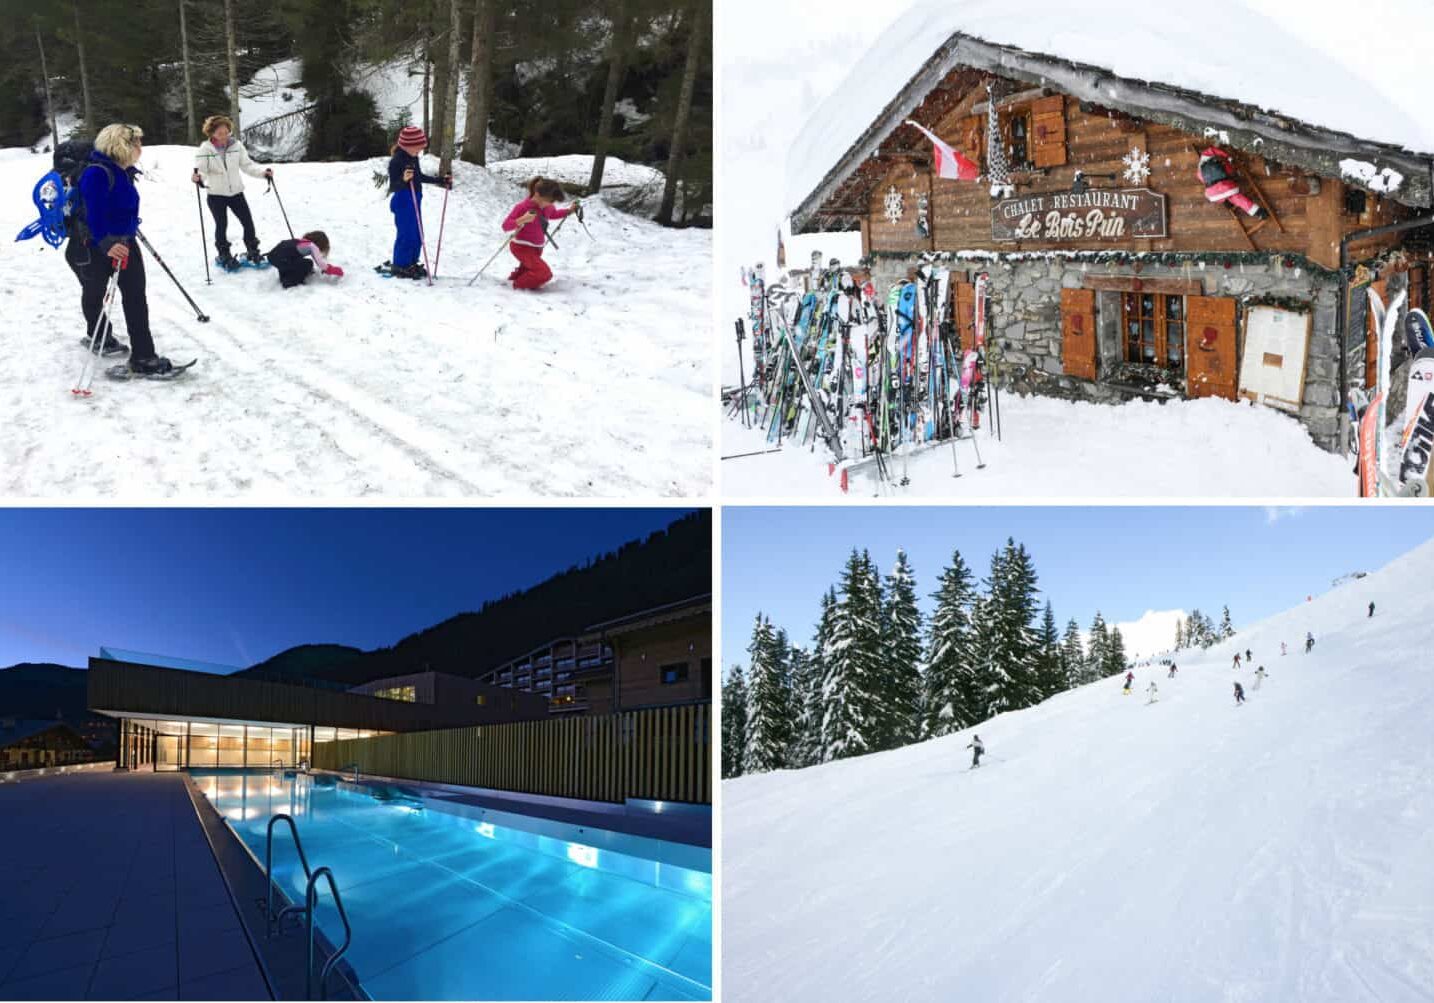 snow shoes, restaurant, swimming pool, ski slope, piste